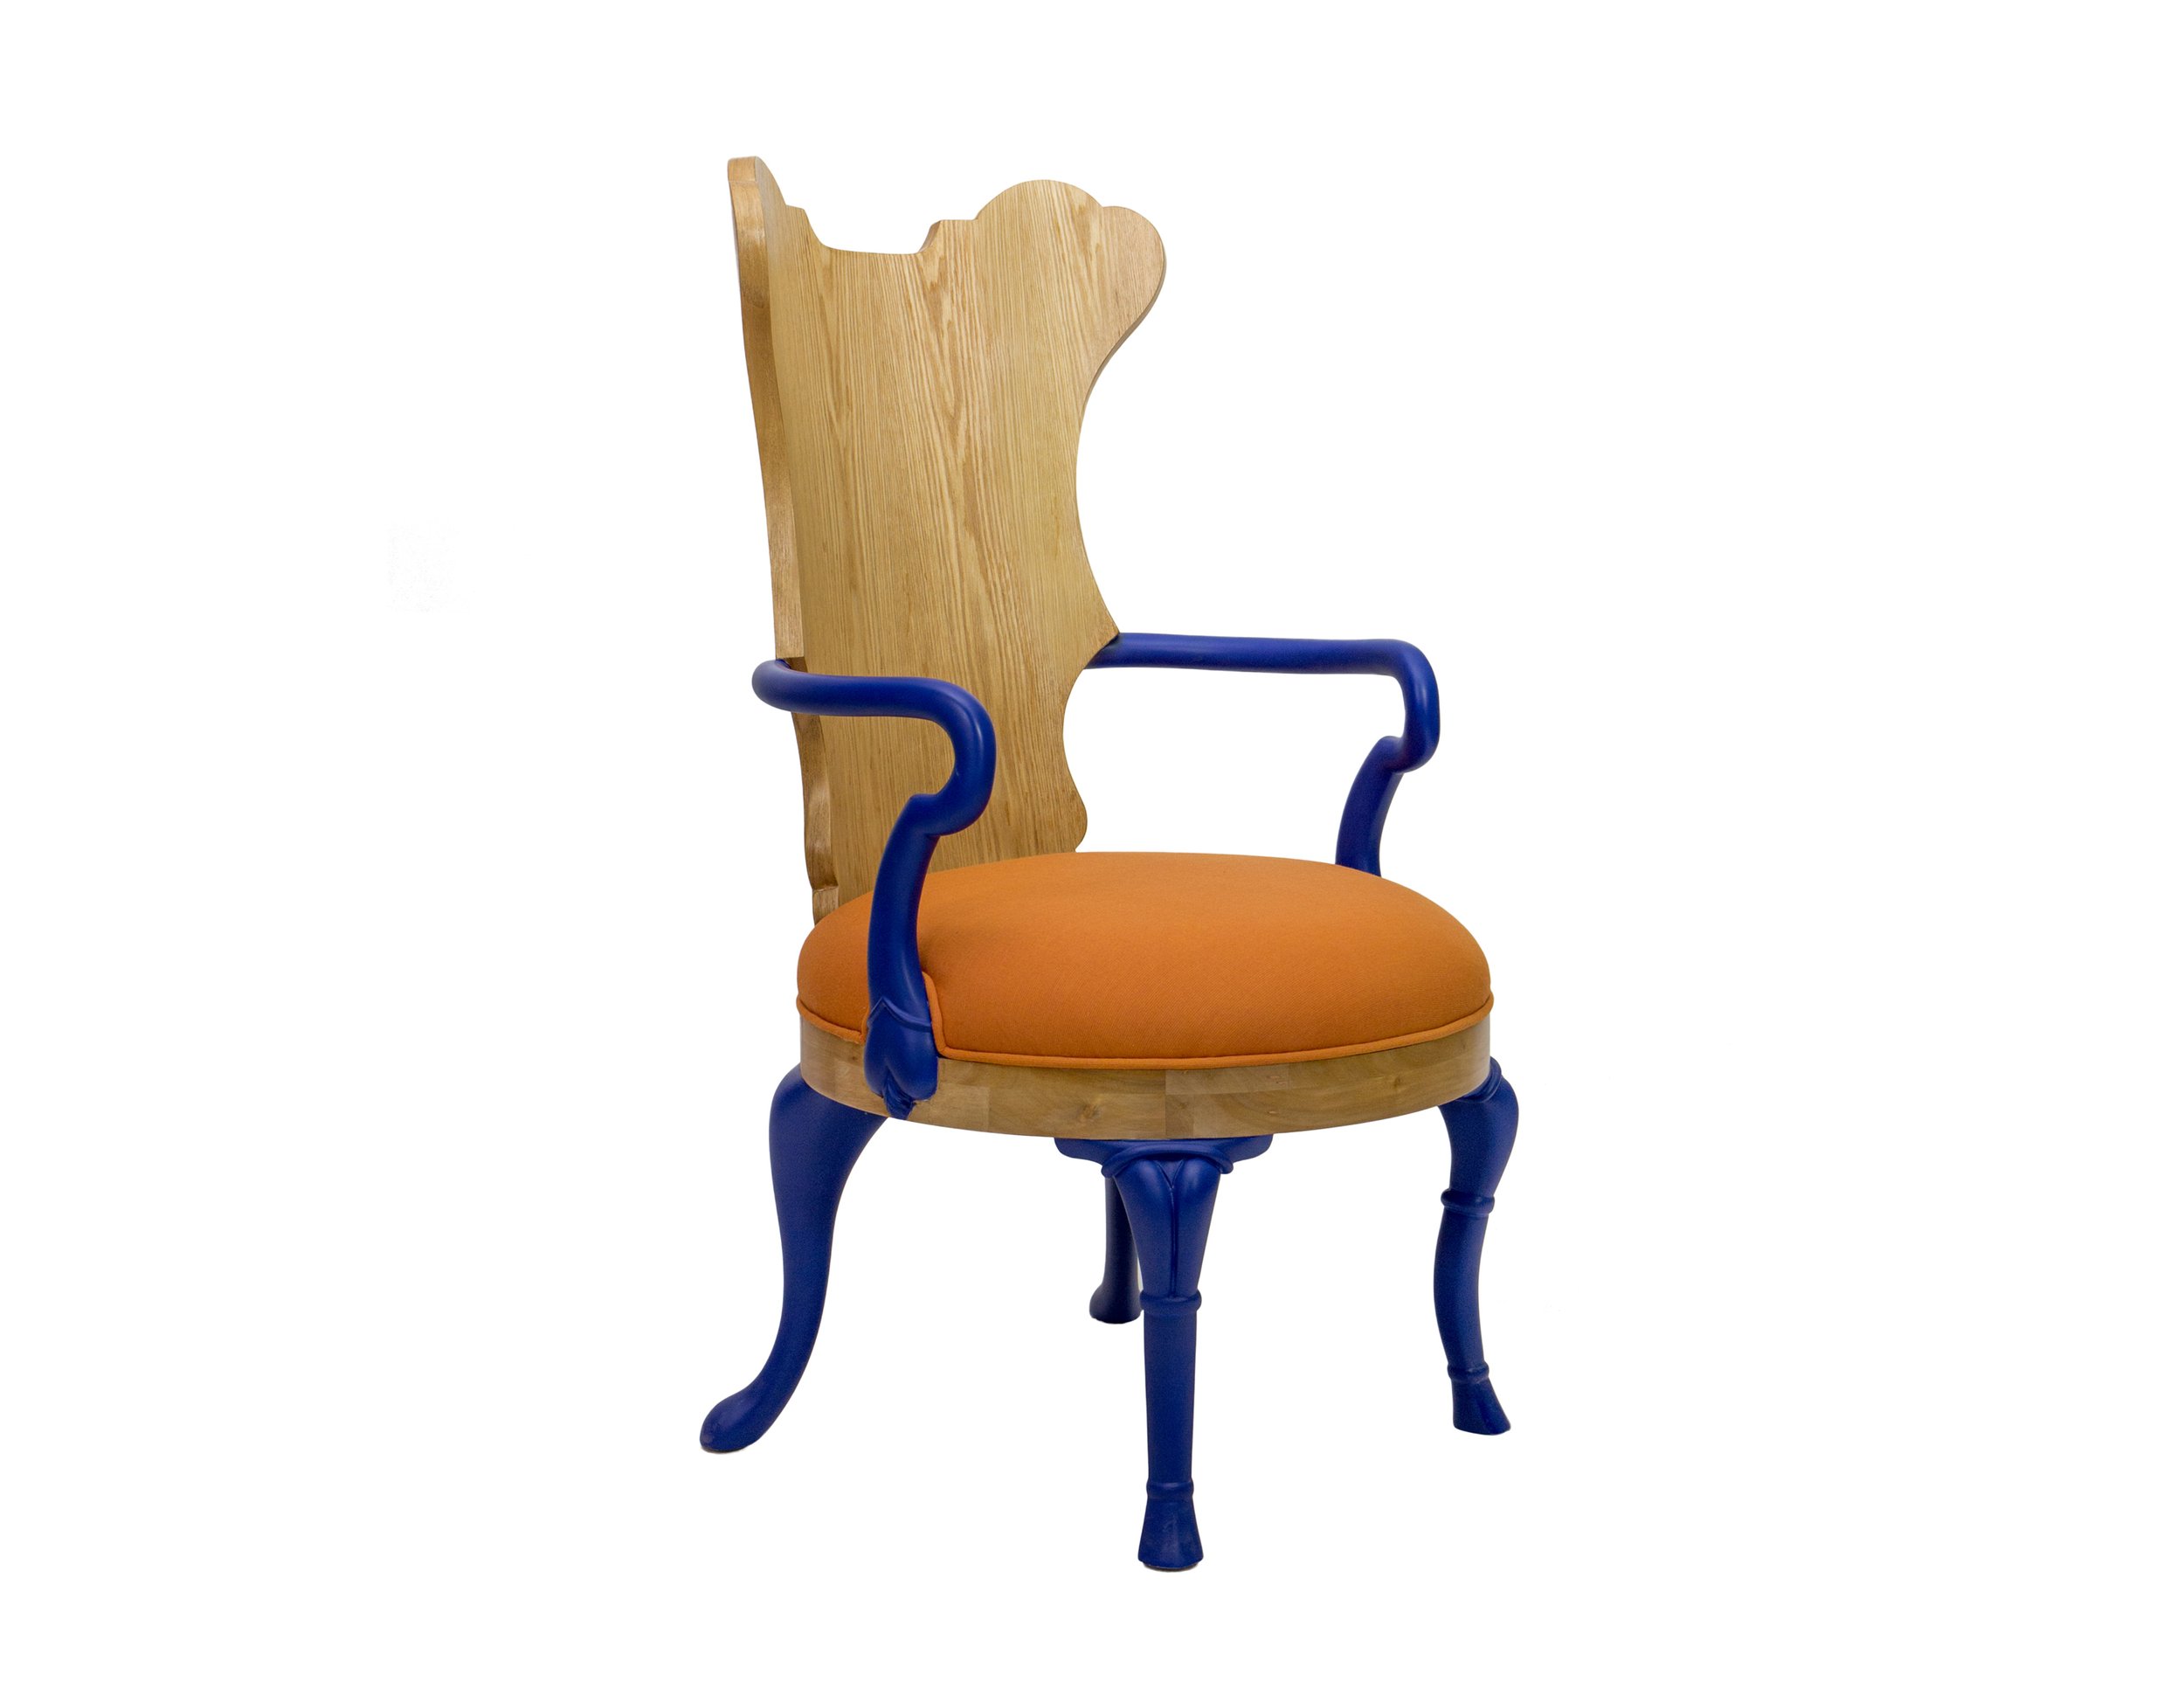 1 Corrine Accent Chair 1.jpg